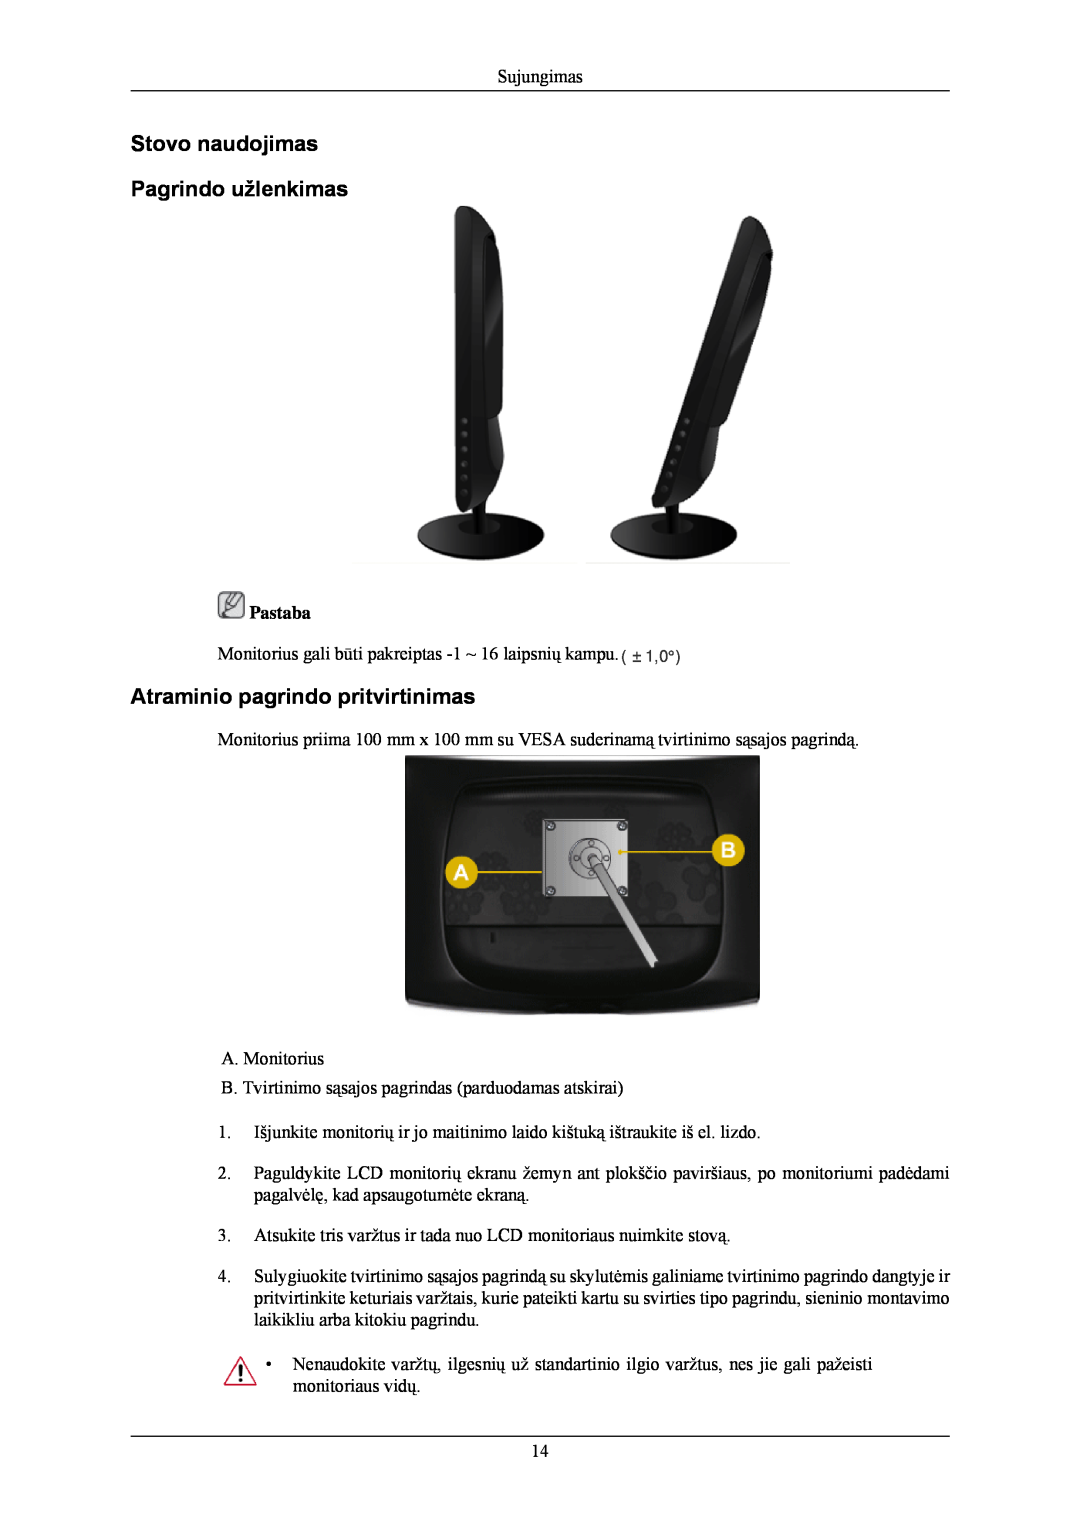 Samsung LS24CMKKFV/EN manual Stovo naudojimas Pagrindo užlenkimas, Atraminio pagrindo pritvirtinimas 